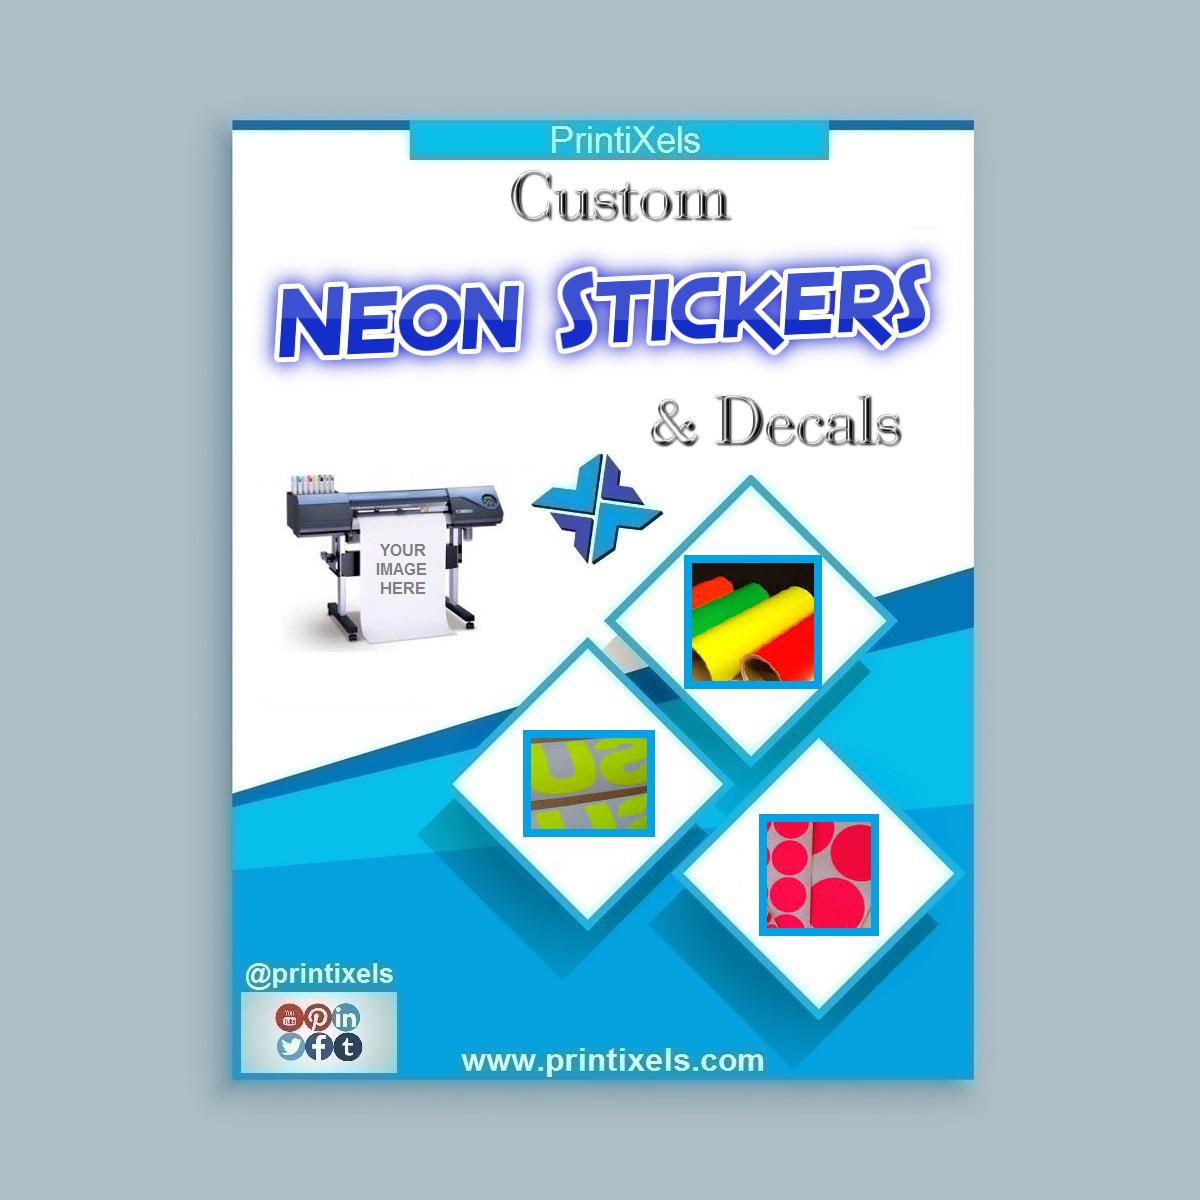 Custom Neon Stickers & Decals